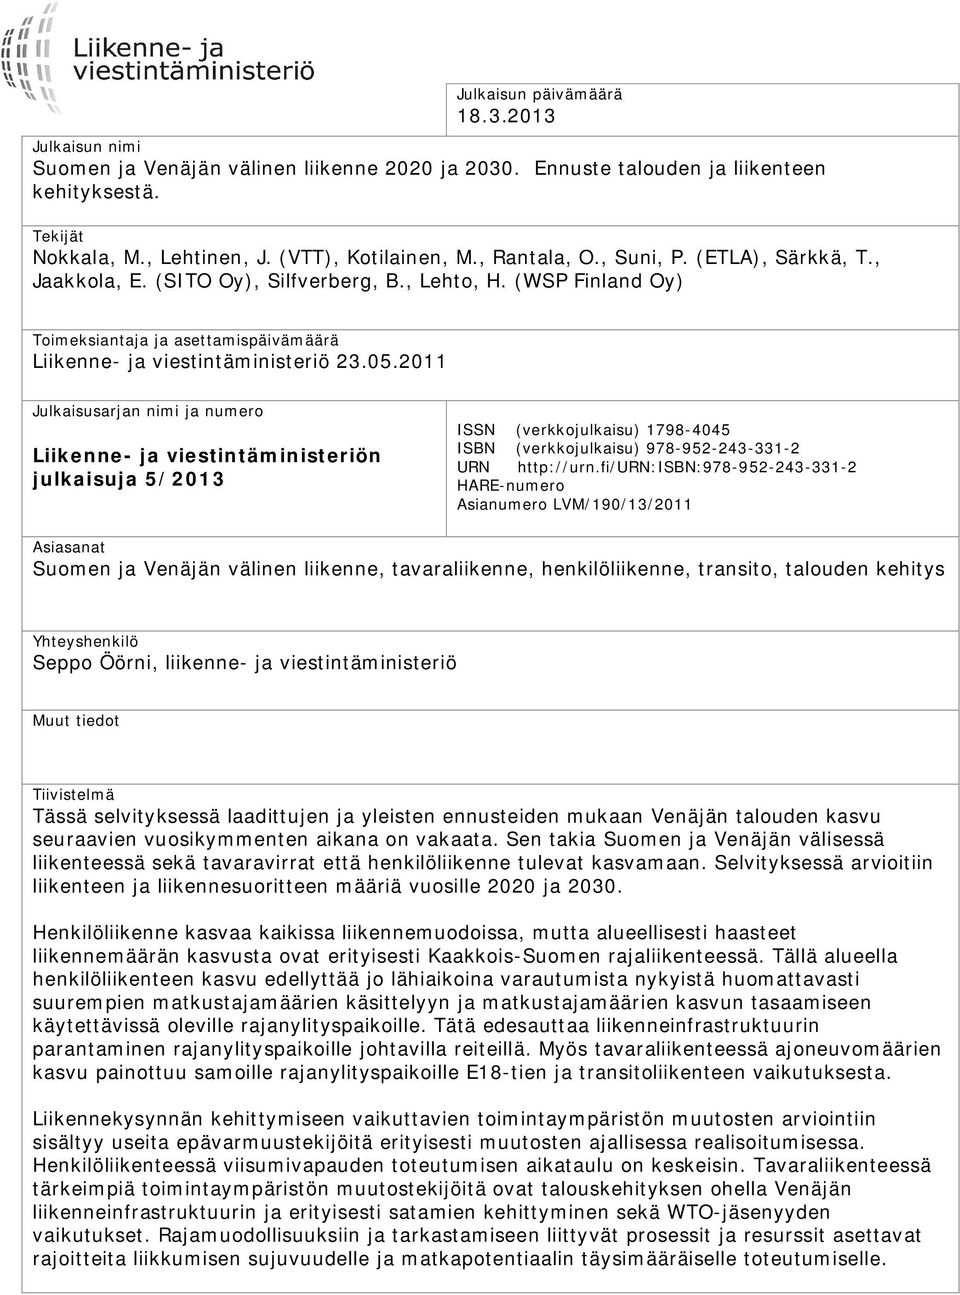 2011 Julkaisusarjan nimi ja numero Liikenne- ja viestintäministeriön julkaisuja 5/2013 ISSN (verkkojulkaisu) 1798-4045 ISBN (verkkojulkaisu) 978-952-243-331-2 URN http://urn.